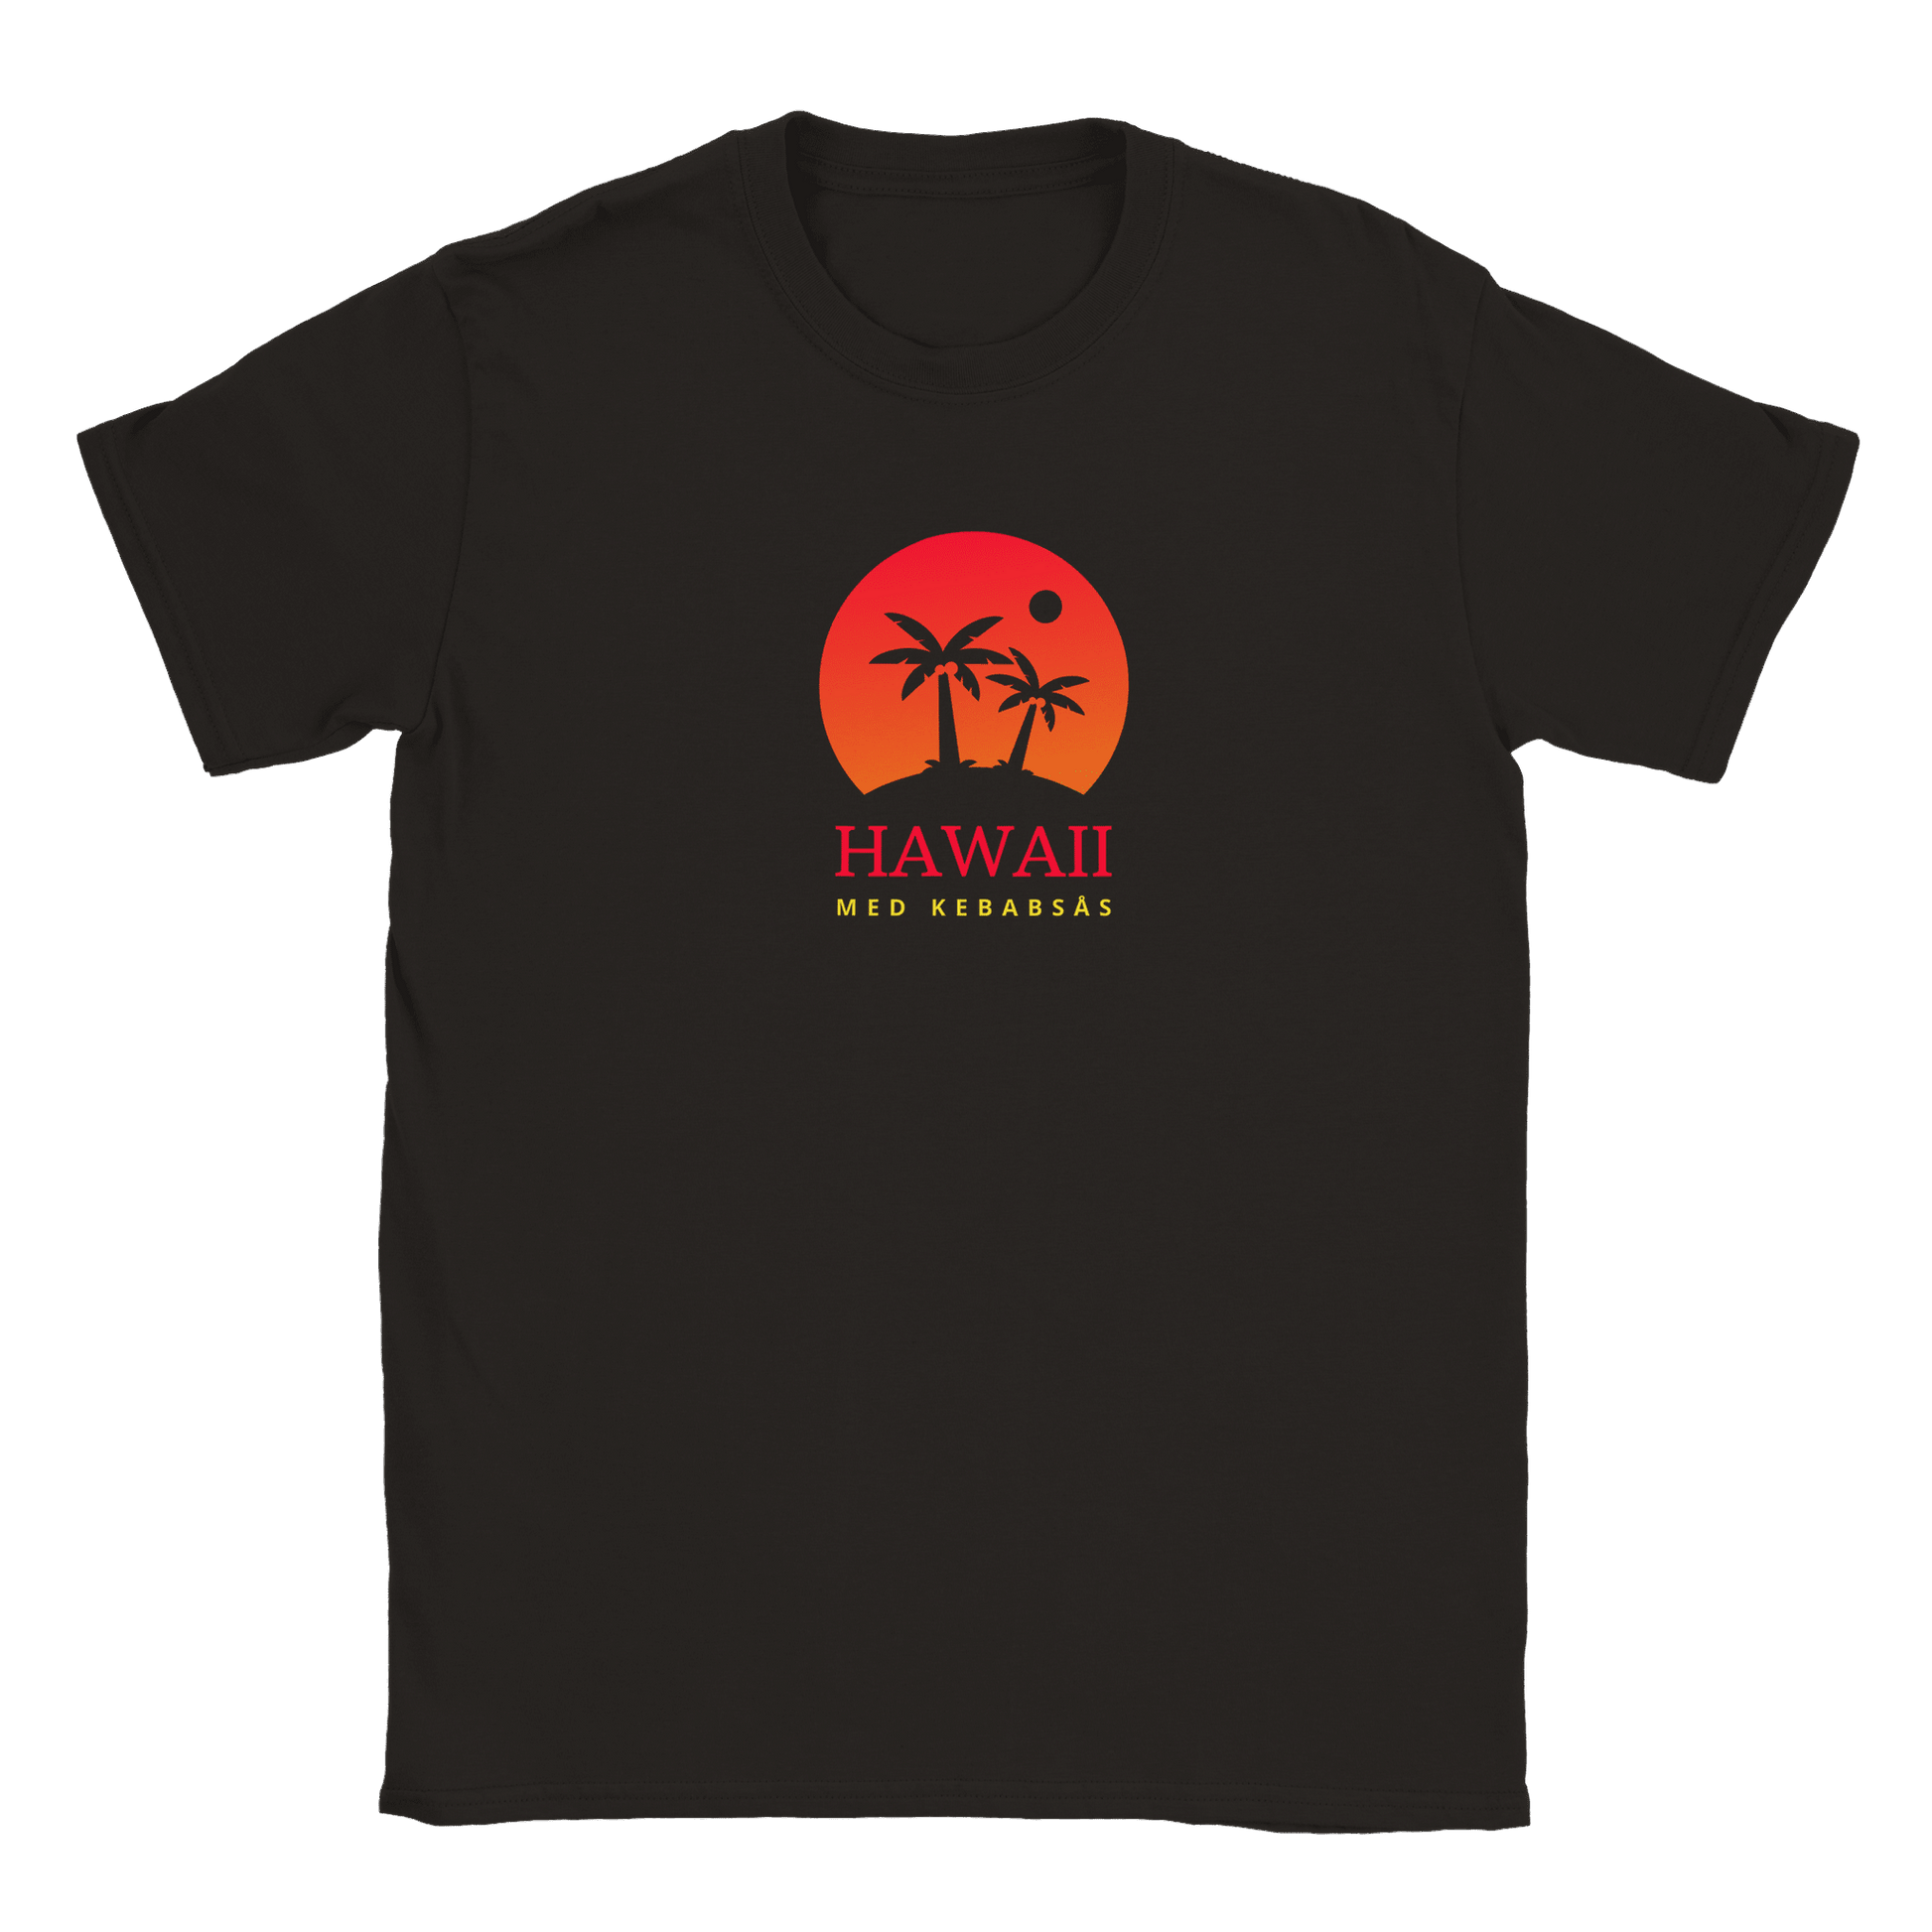 Hawaii med kebabsås - T-shirt Svart